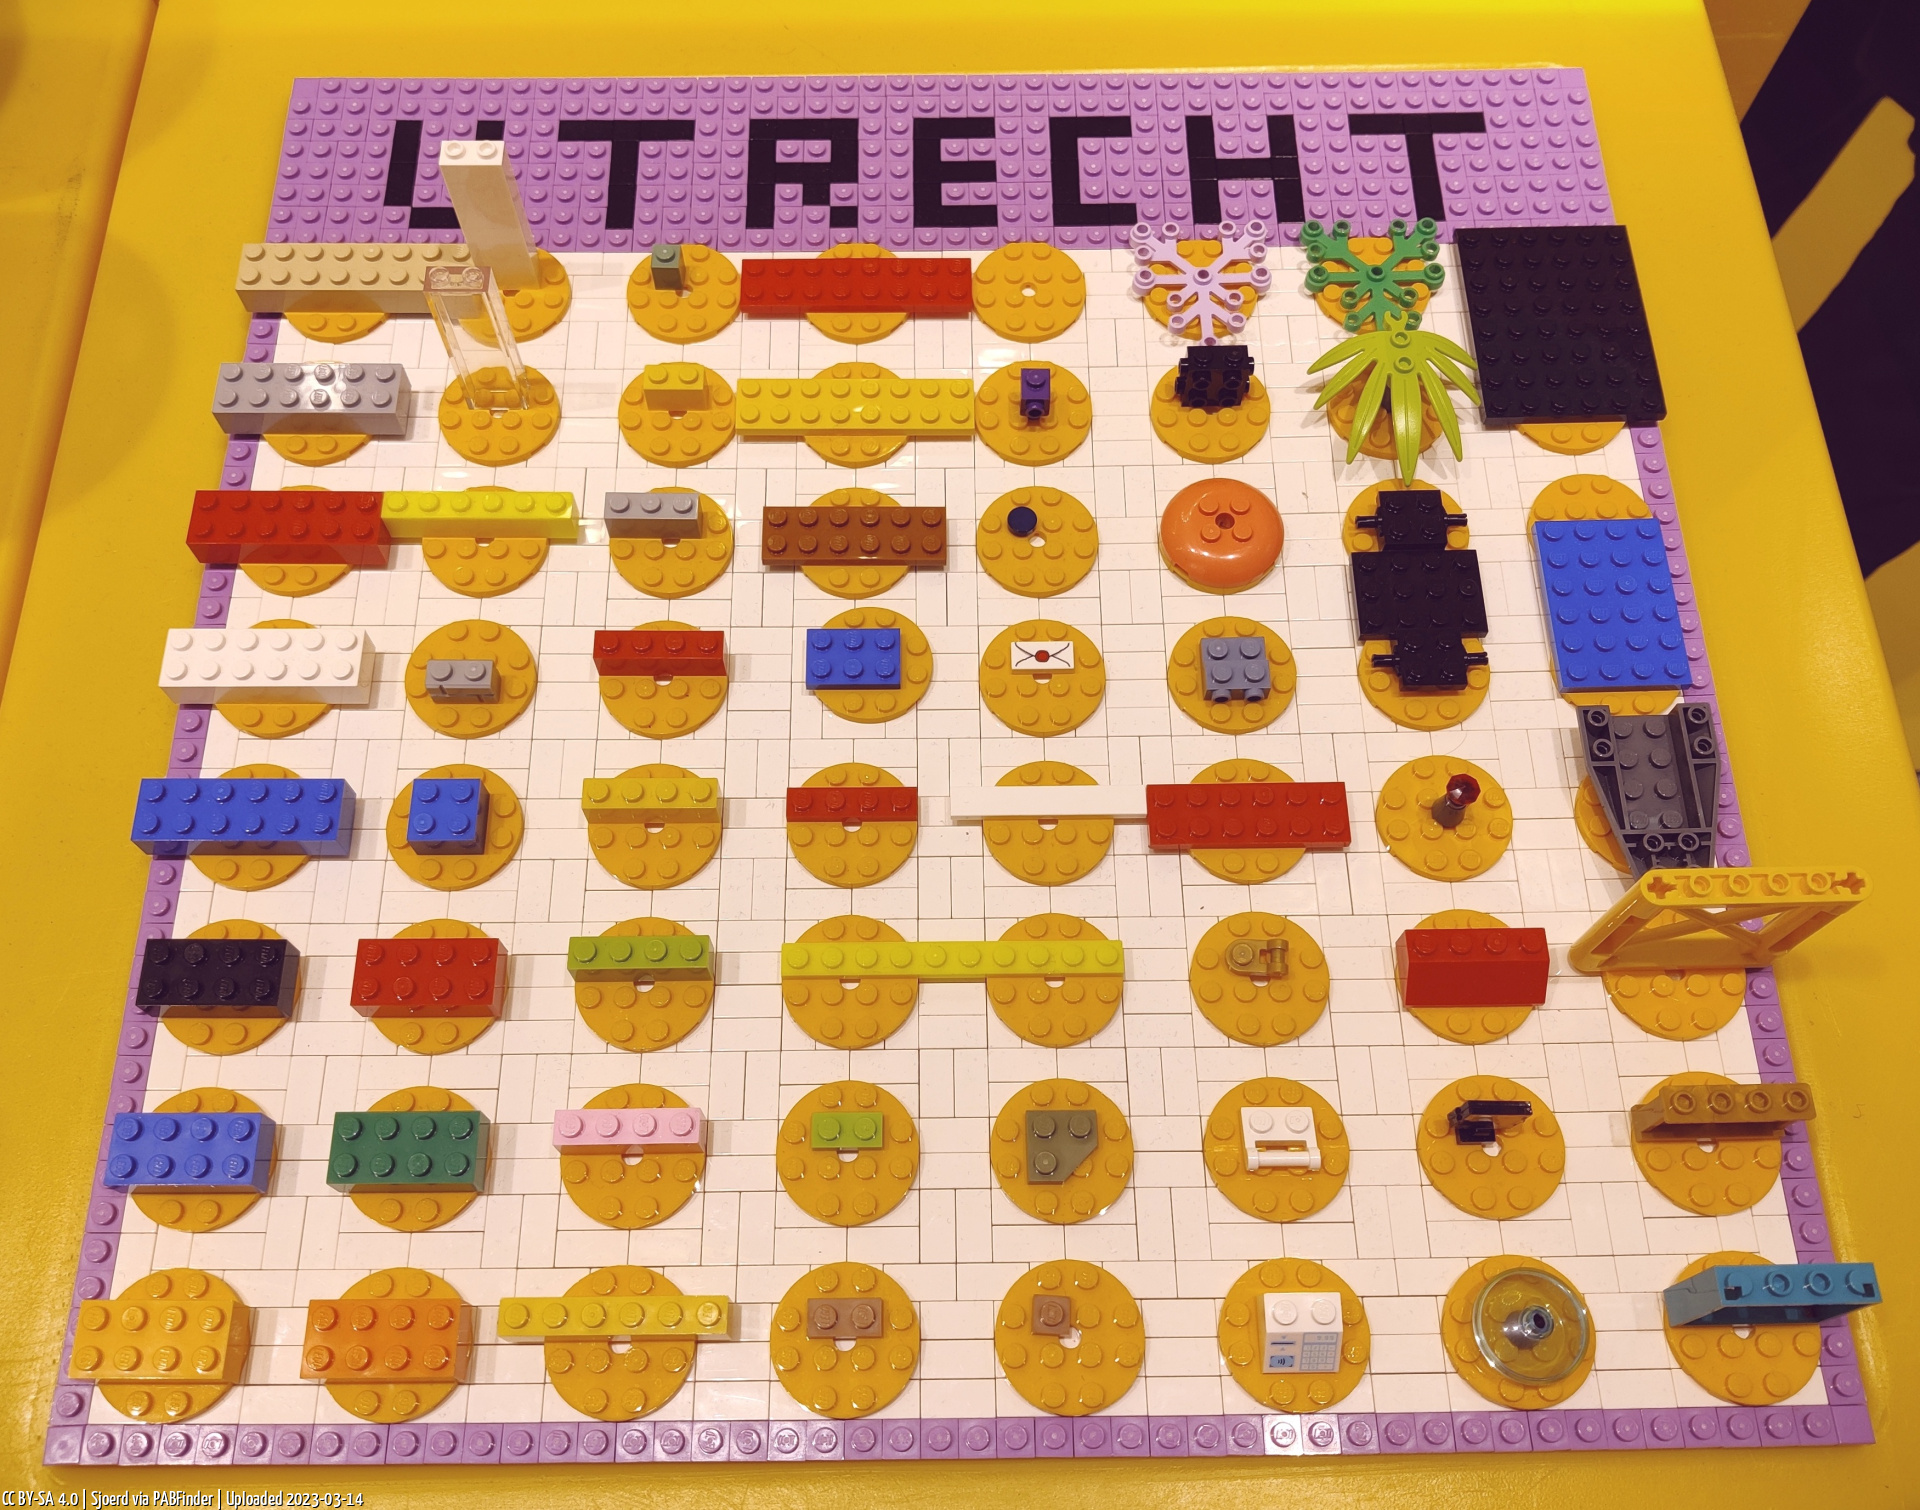 Pick a Brick Utrecht (Sjoerd, 3/14/23, 1:18:53 PM)